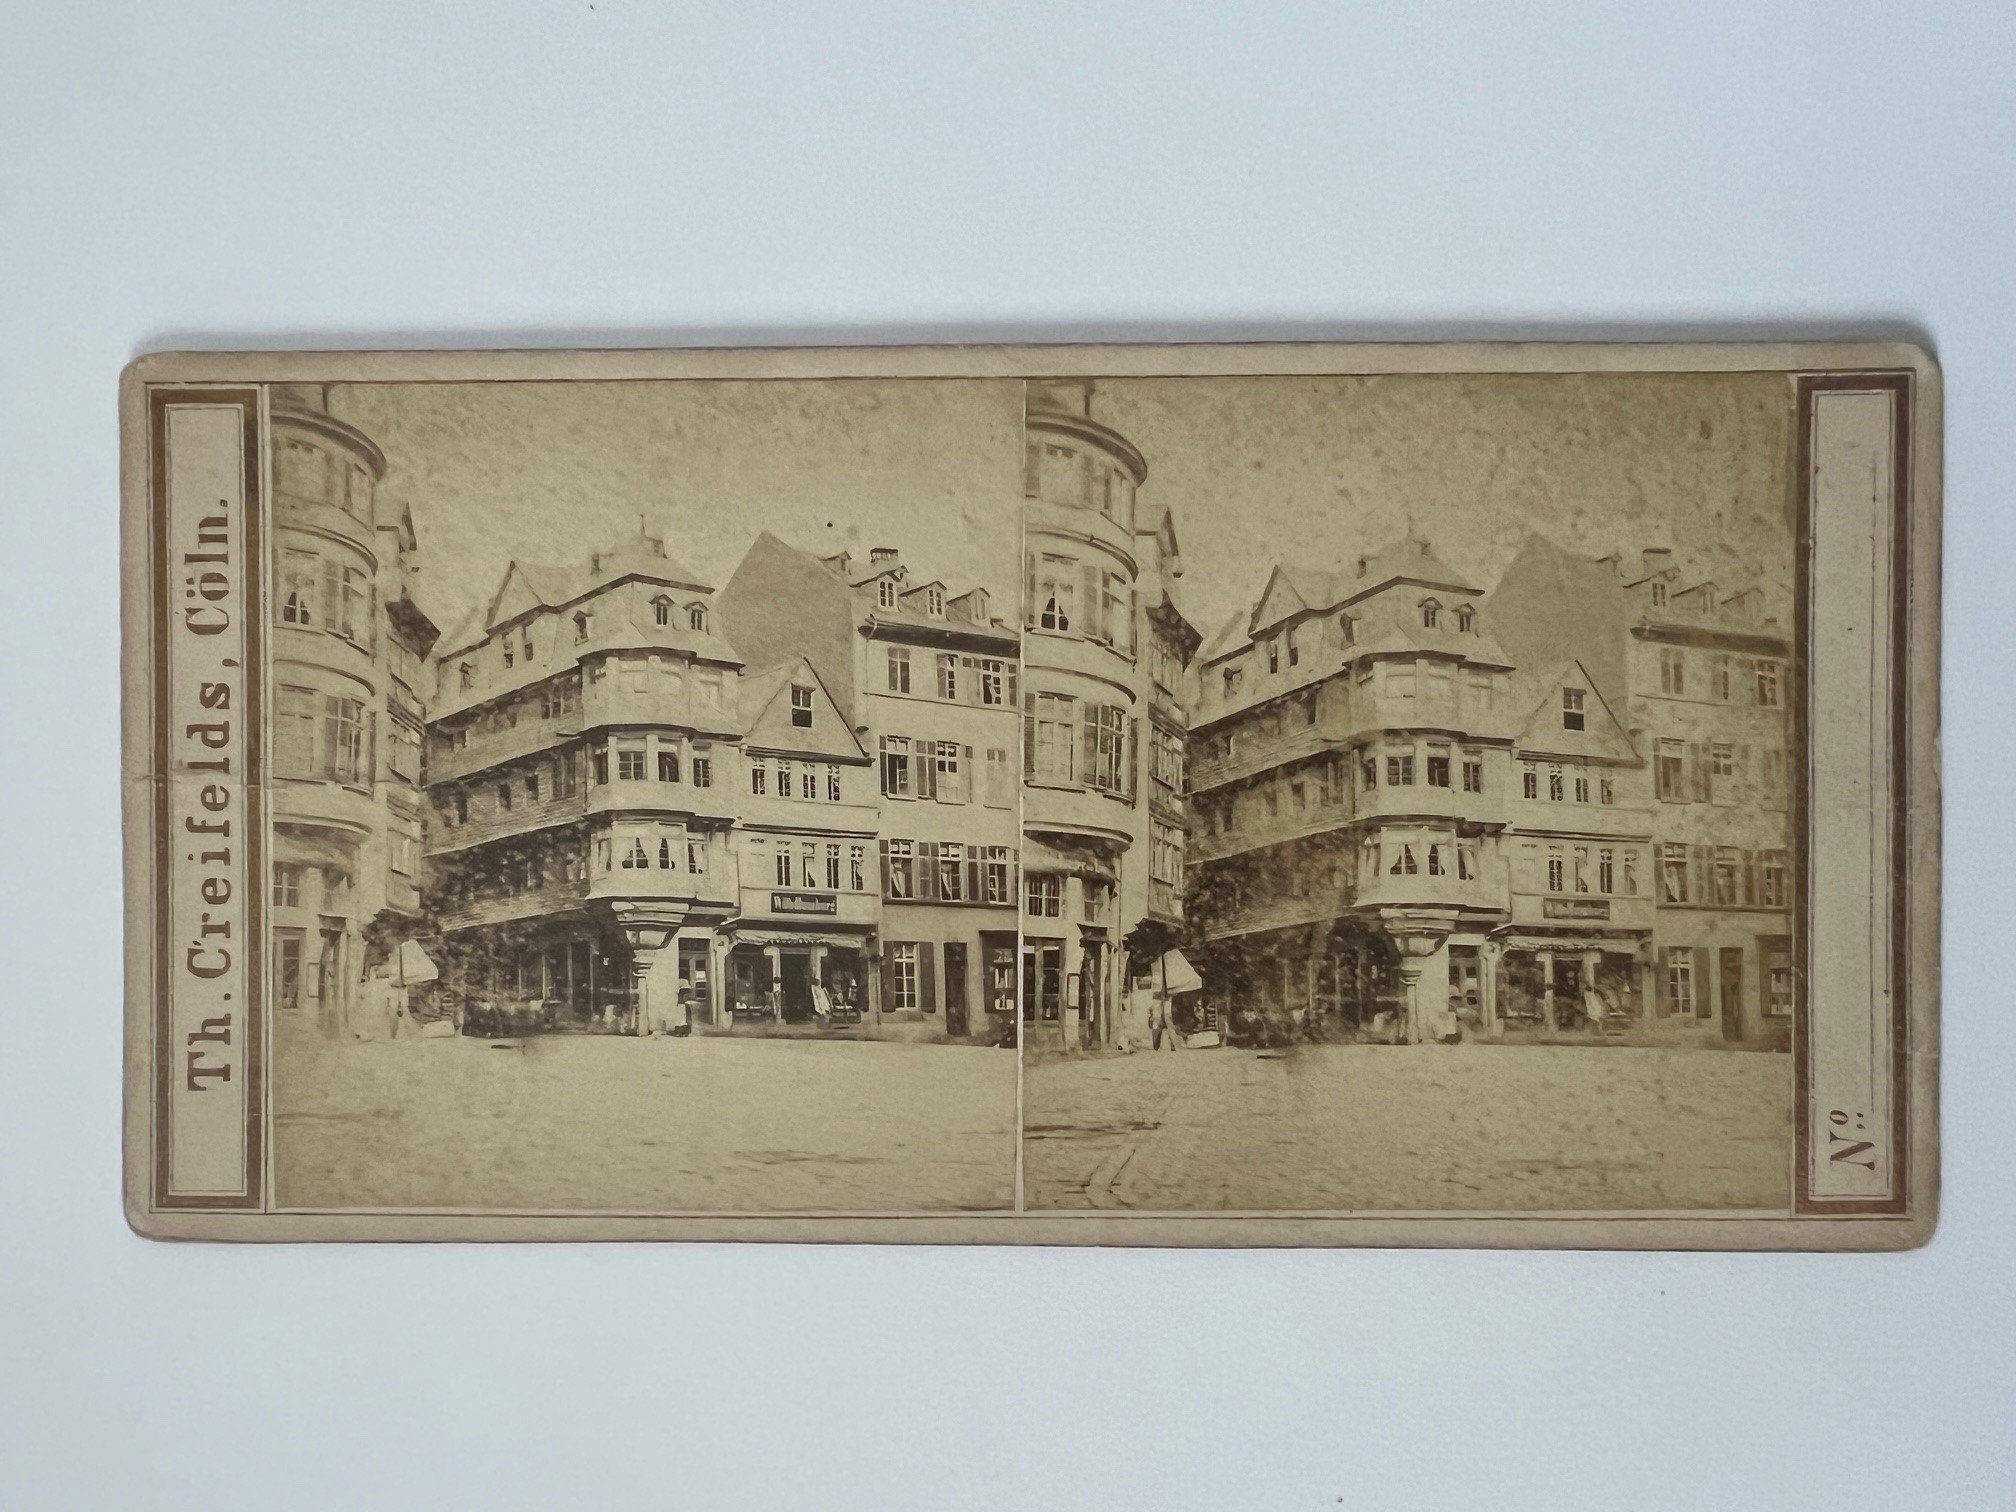 Stereobild, Theodor Creifelds, Frankfurt, Luther-Haus, ca. 1870. (Taunus-Rhein-Main - Regionalgeschichtliche Sammlung Dr. Stefan Naas CC BY-NC-SA)